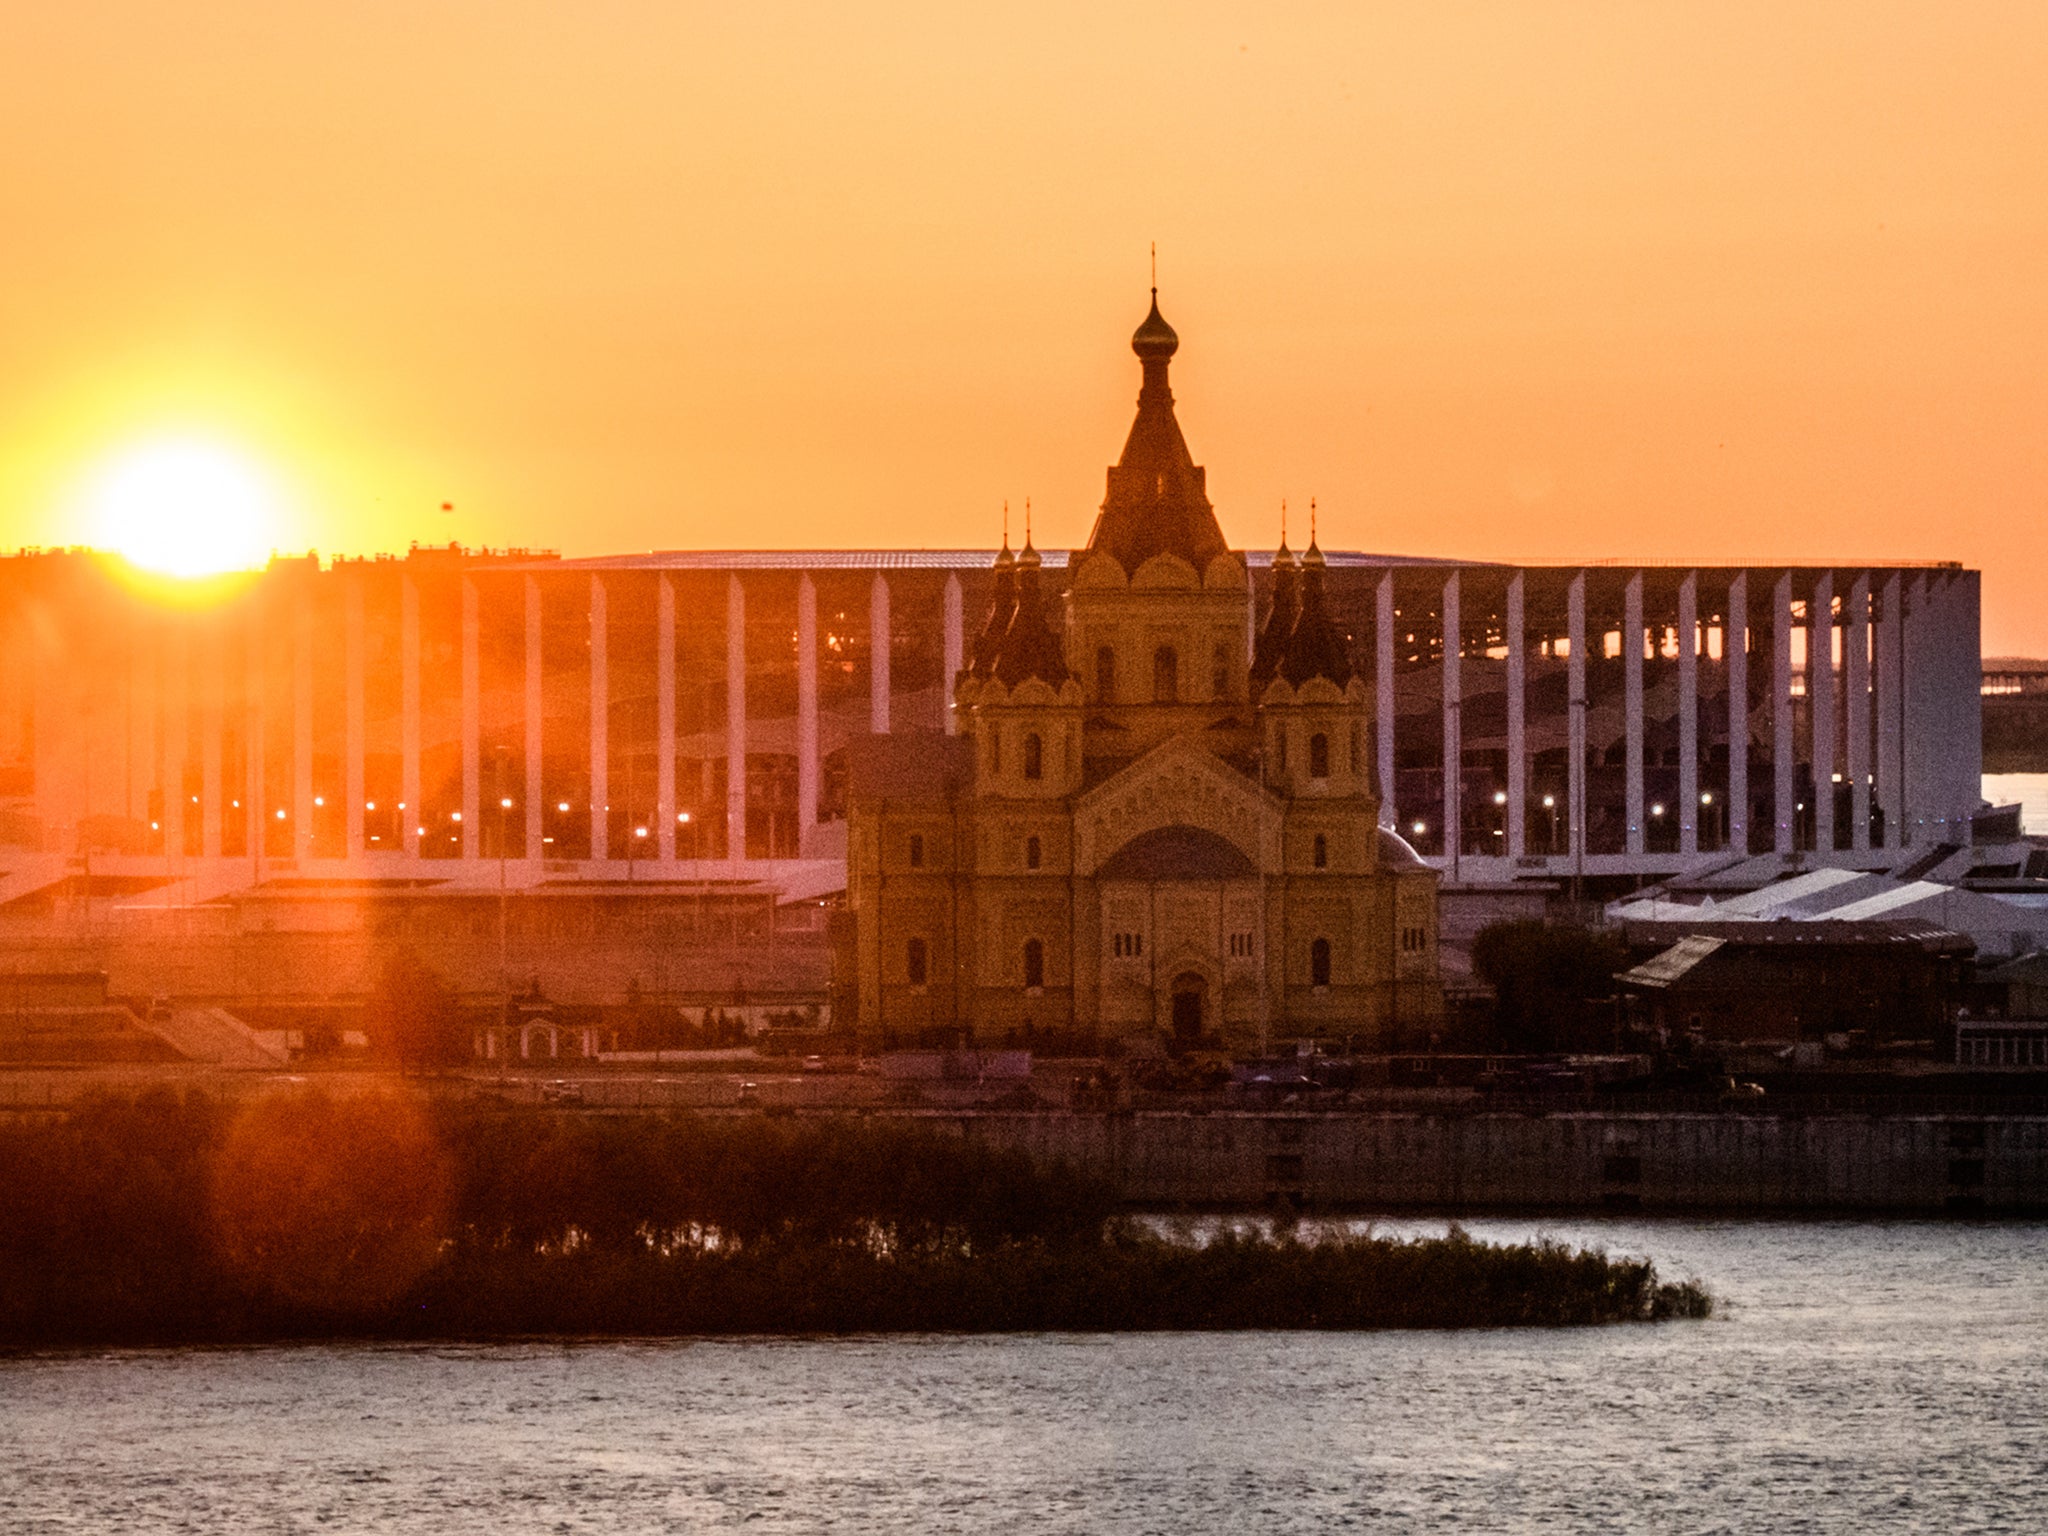 Nizhny Novgorod arena and Alexander Nevsky Cathedral at sunset (Getty)